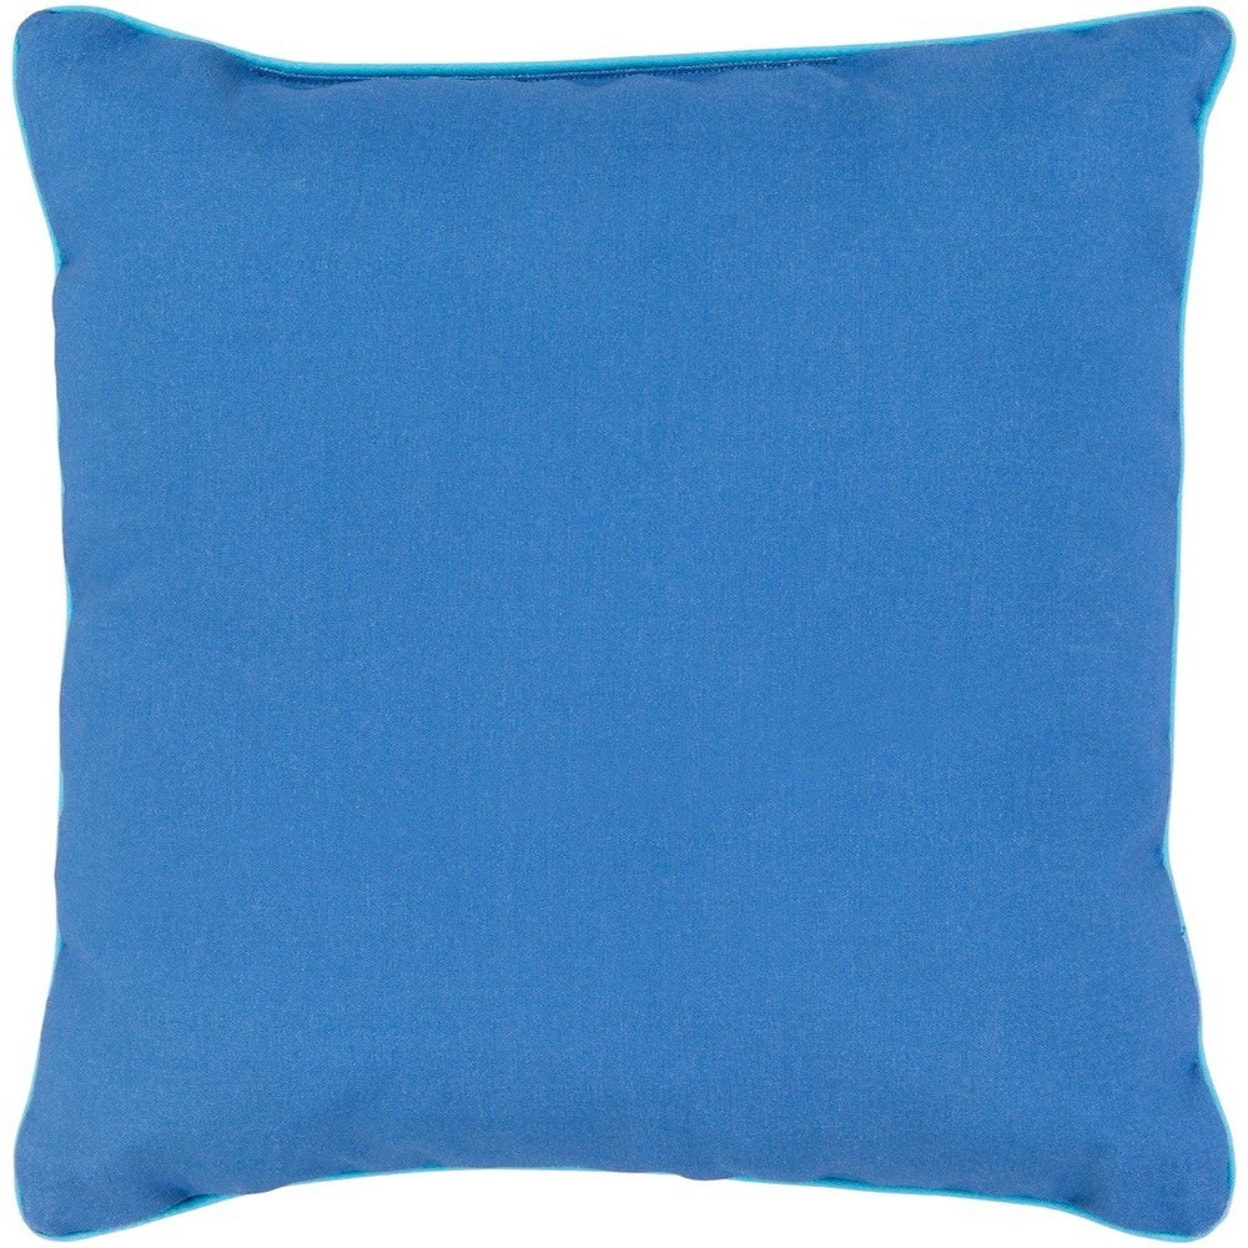 Surya Bahari 20 x 20 x 4 Polyester Throw Pillow